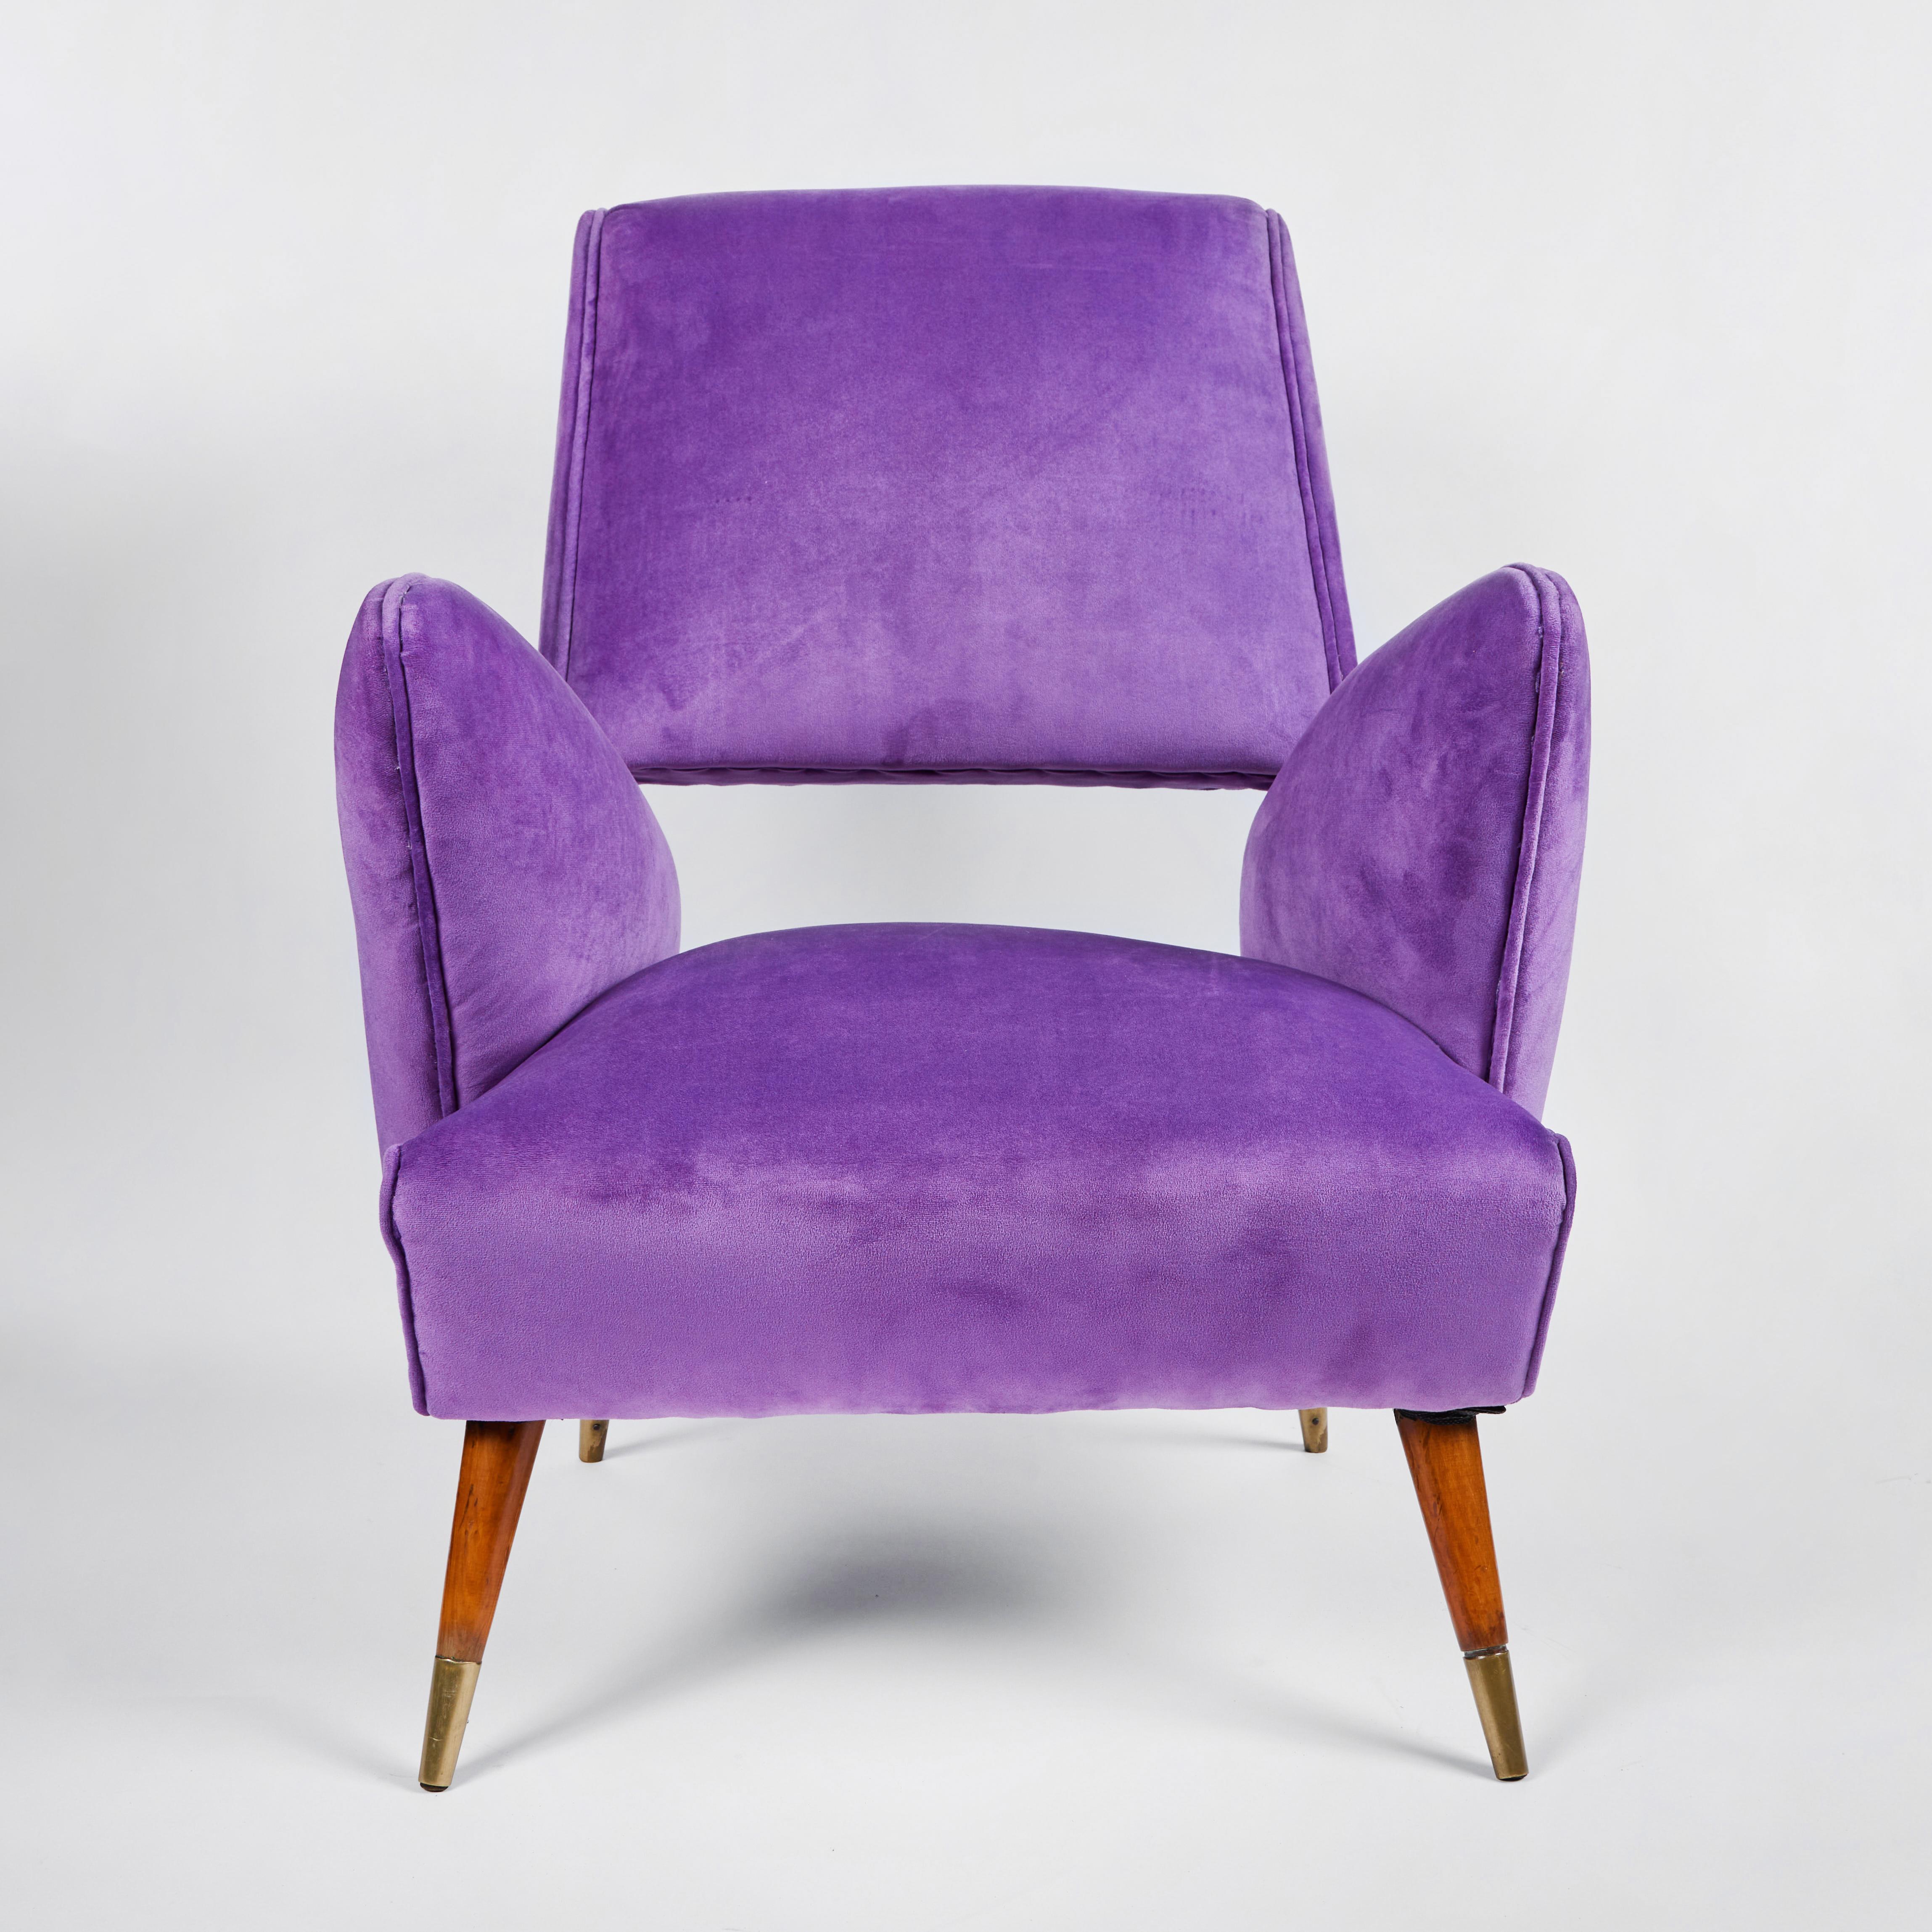 Schickes Paar skulpturaler italienischer Stühle aus der Mitte des Jahrhunderts von Nino Zoncada, circa 1950er Jahre. Die Stühle haben Beine aus Nussbaumholz mit Messing-Sabots.  Gepolstert  in einem violetten Mikrofaserstoff.